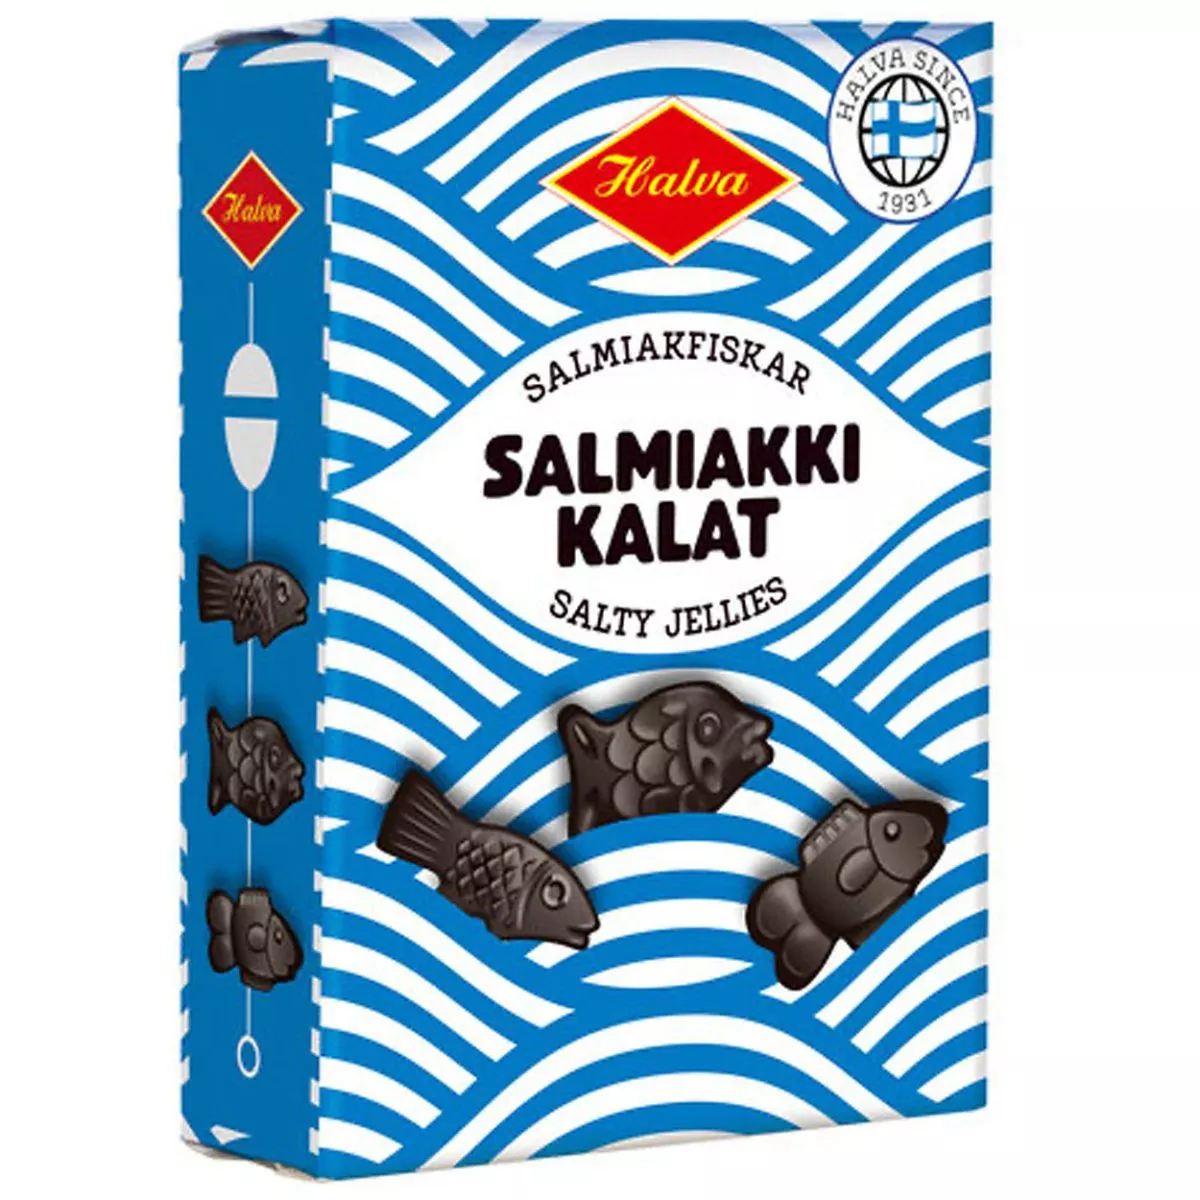 Halva Salmiakki Kalat Box - Salmiakfiskar (240g) 1